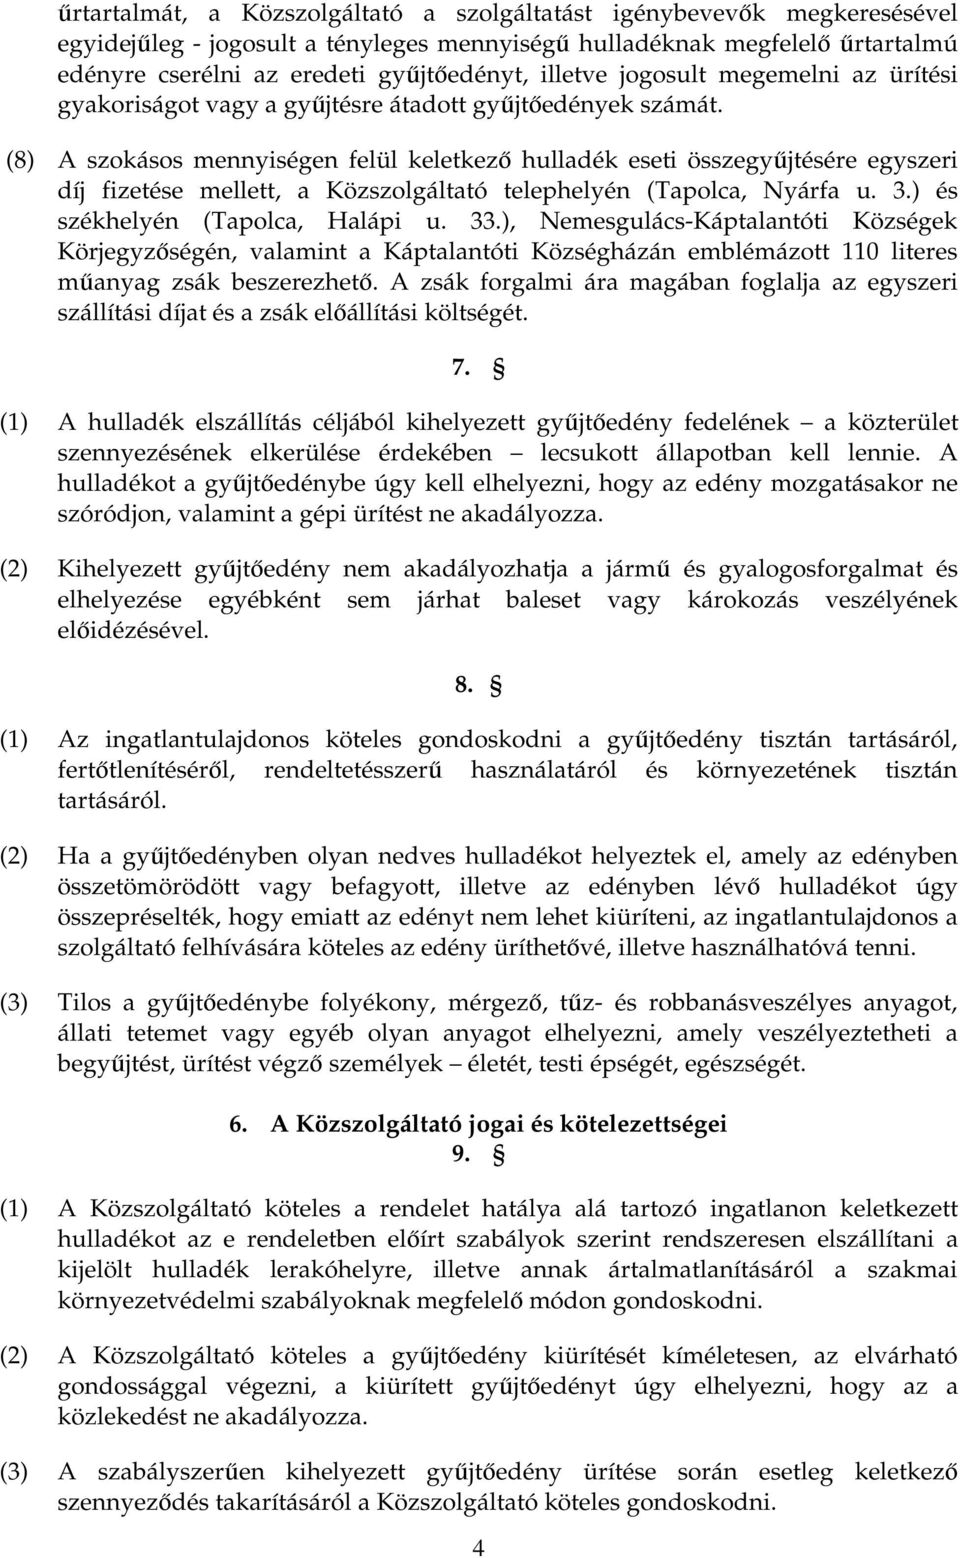 (8) A szokásos mennyiségen felül keletkezı hulladék eseti összegyőjtésére egyszeri díj fizetése mellett, a Közszolgáltató telephelyén (Tapolca, Nyárfa u. 3.) és székhelyén (Tapolca, Halápi u. 33.